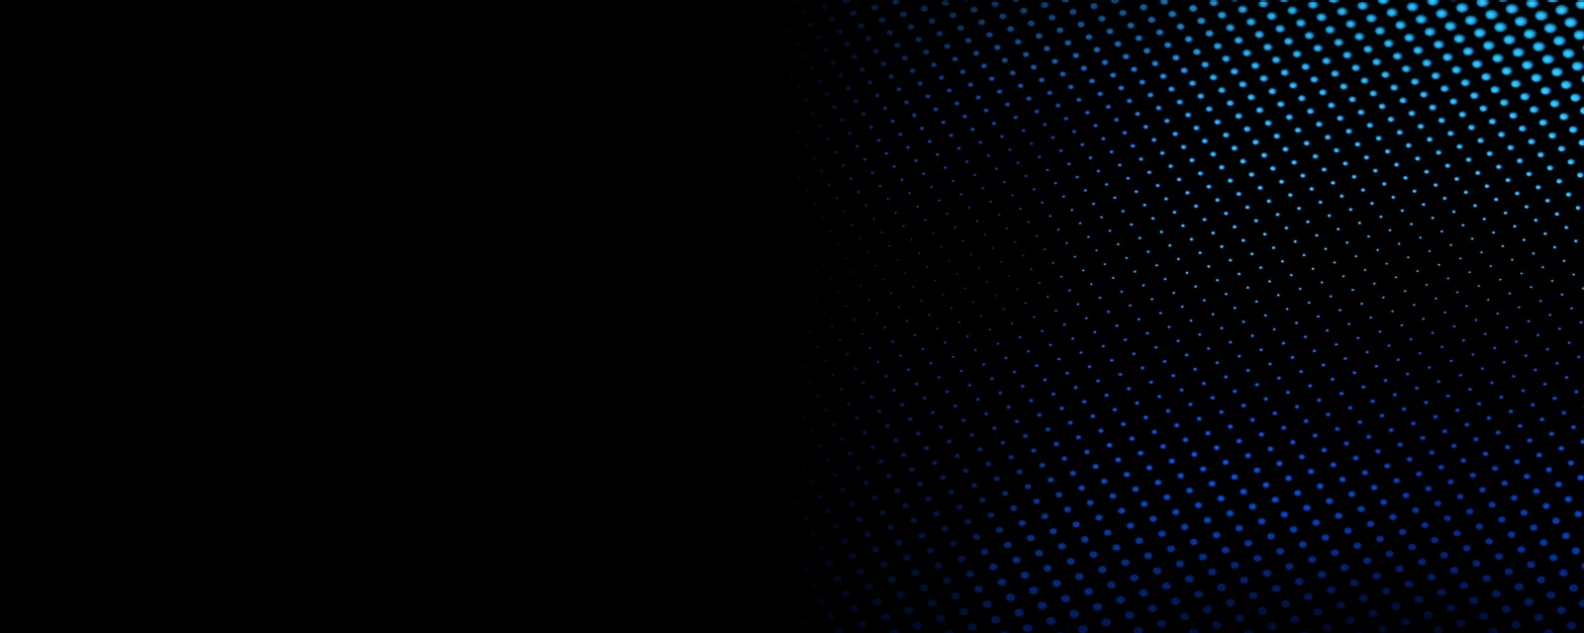 uno sfondo nero con piccoli cerchi blu